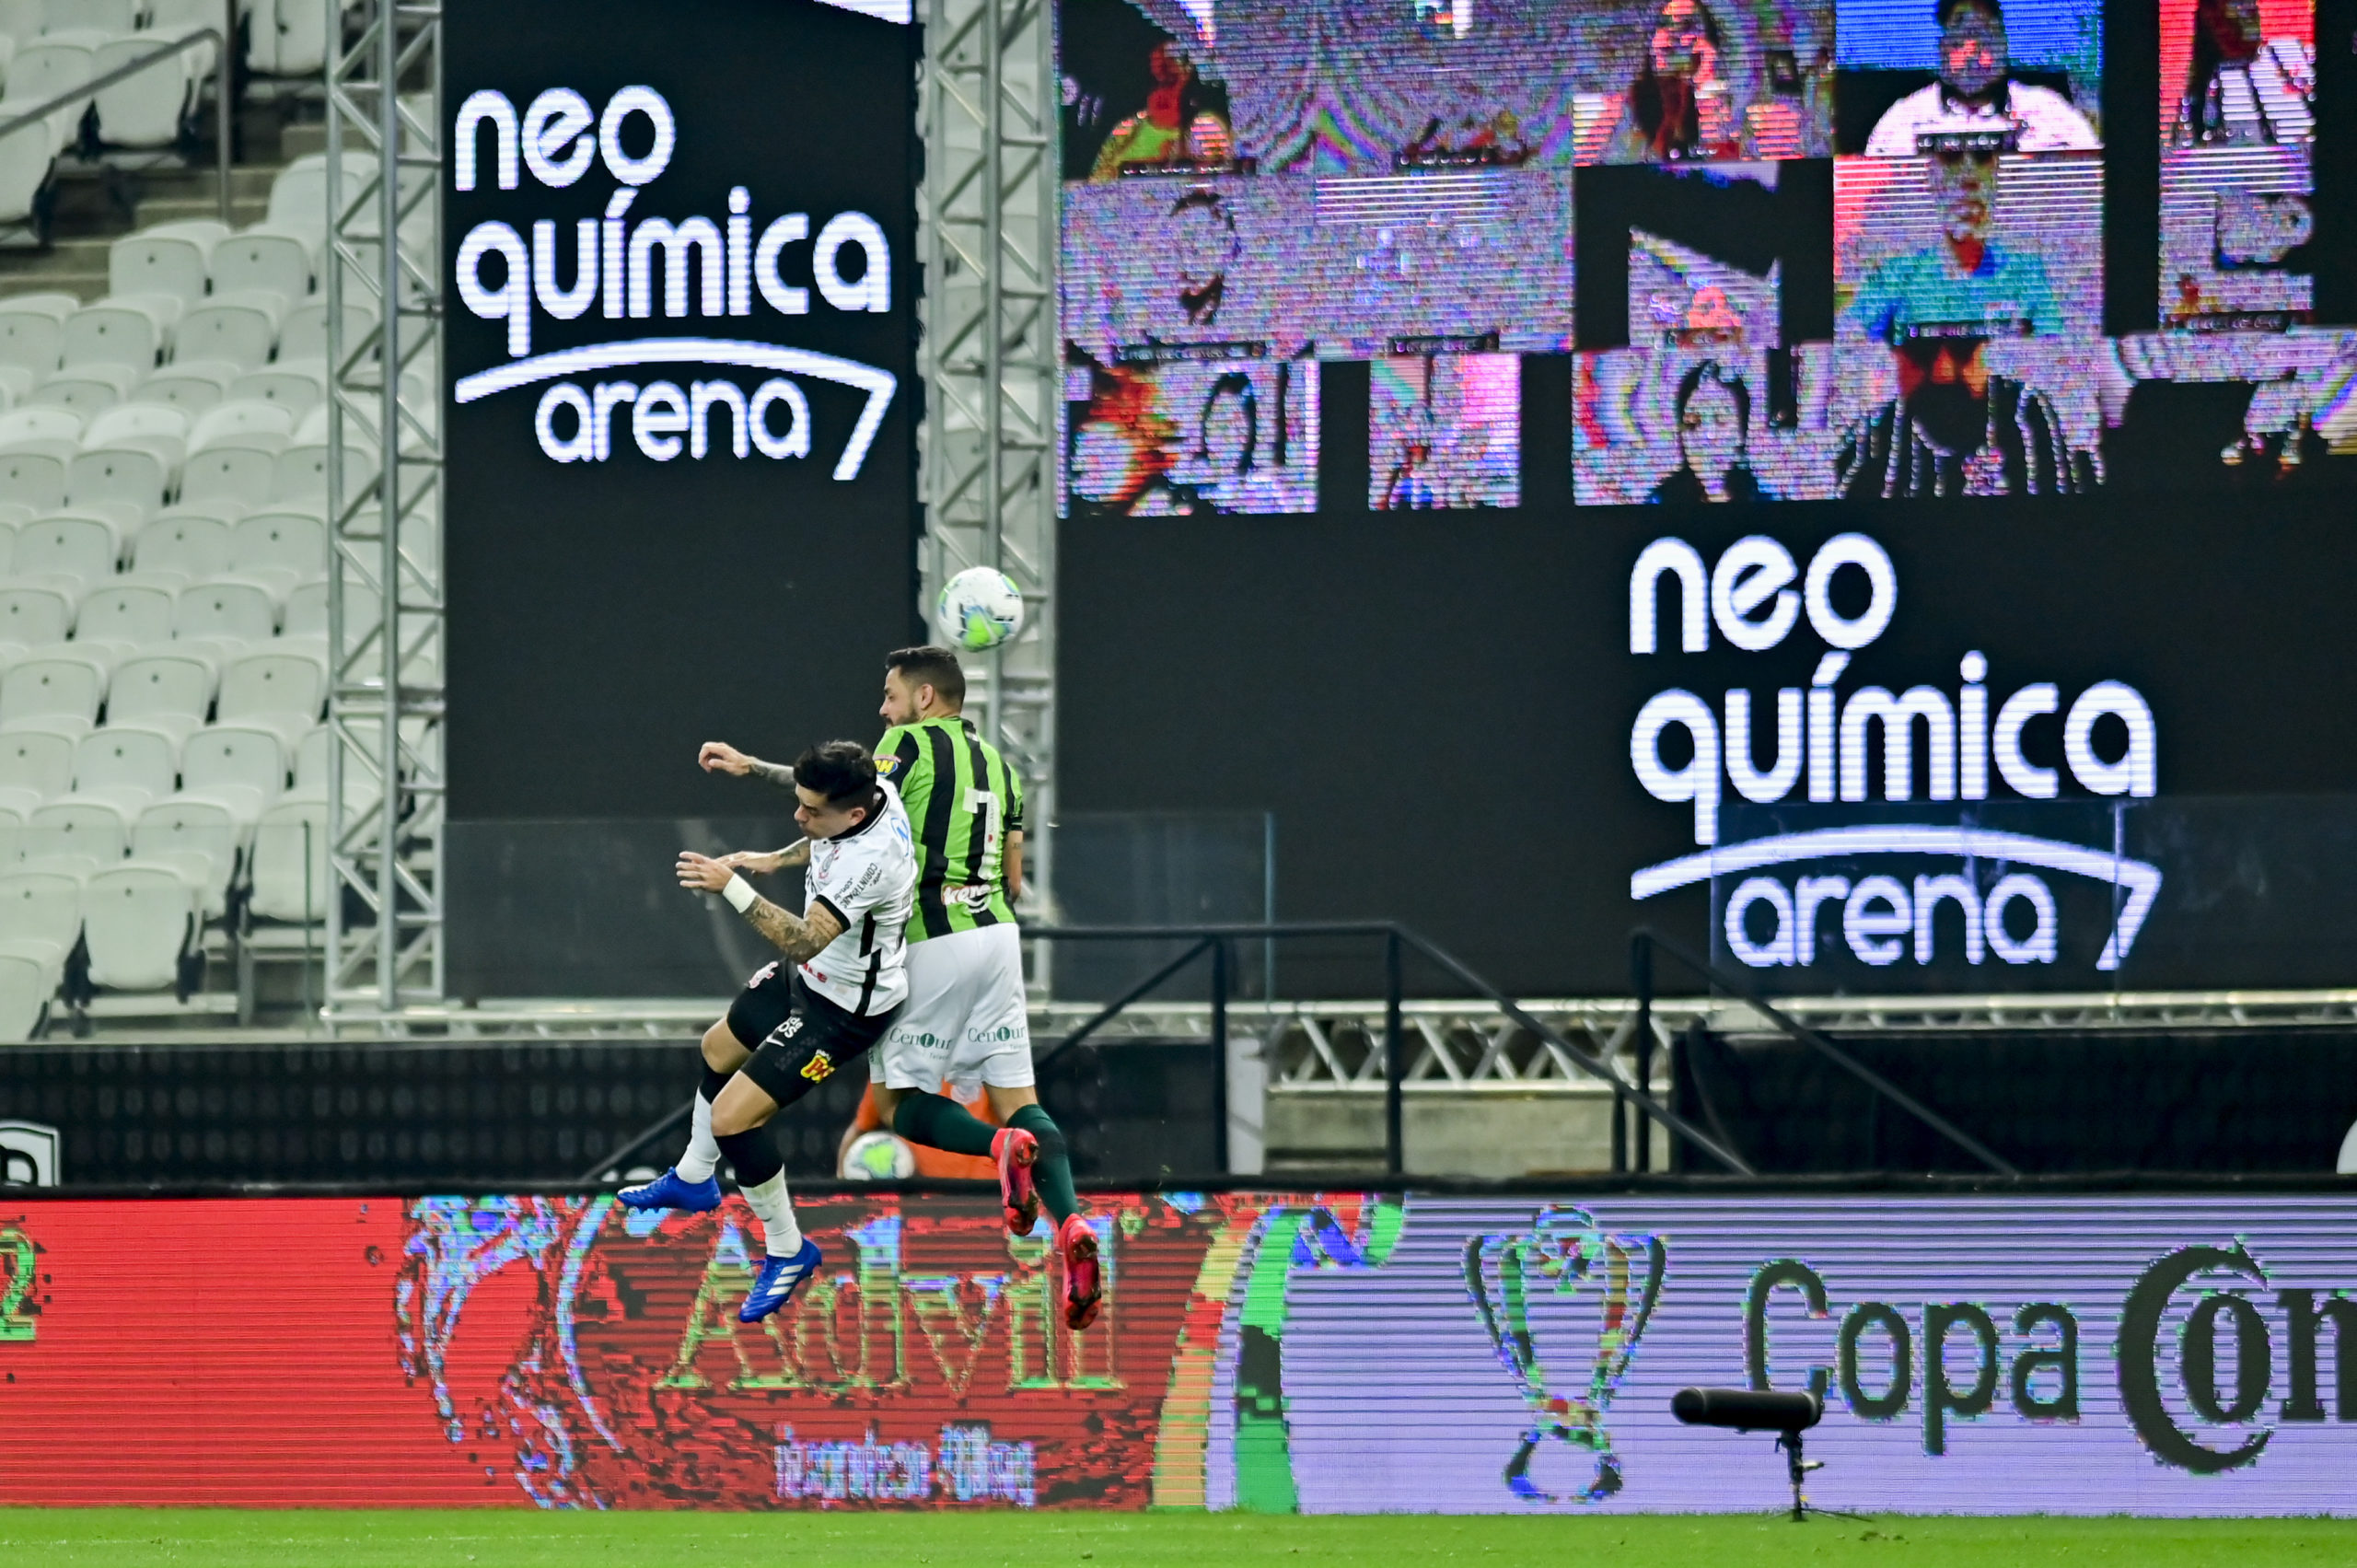 América-MG se aproxima de retorno à casa do Corinthians, palco de épica vitória em sua história; relembre